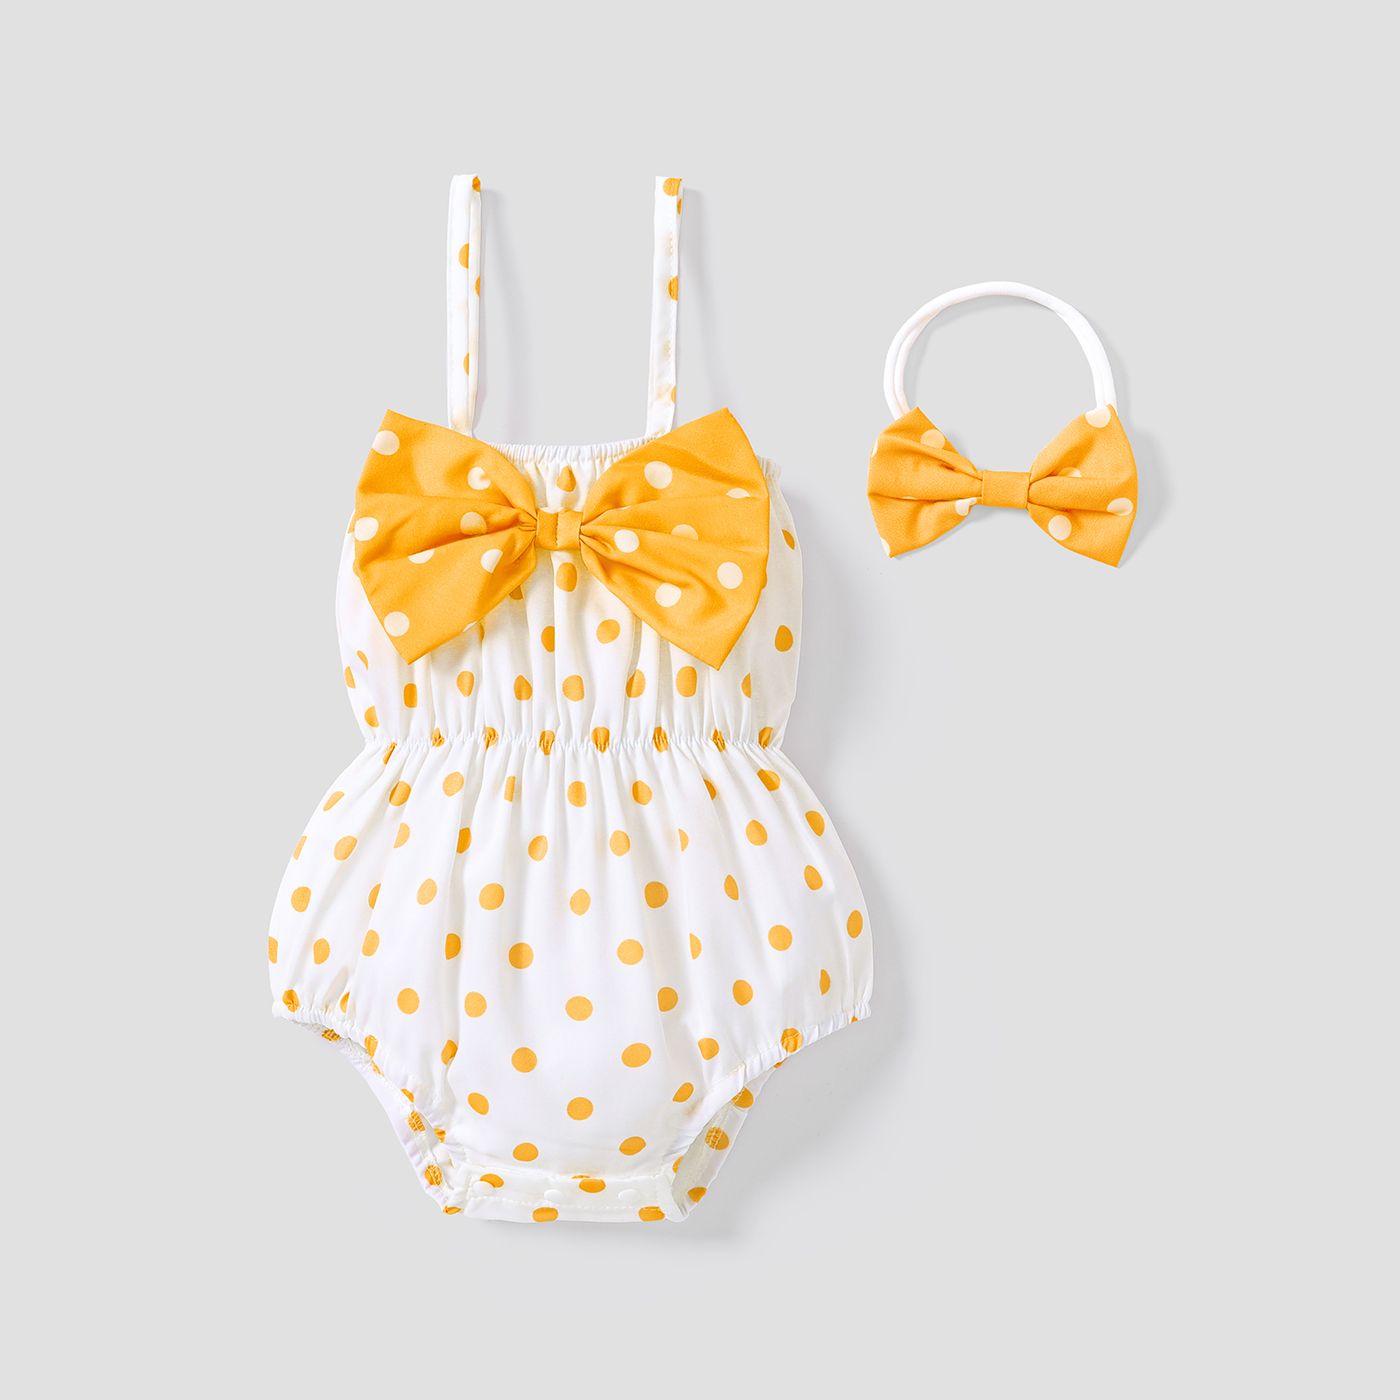 2pcs Baby Girl Allover Dots Bowknot Sleeveless Spaghetti Strap Romper With Headband Set